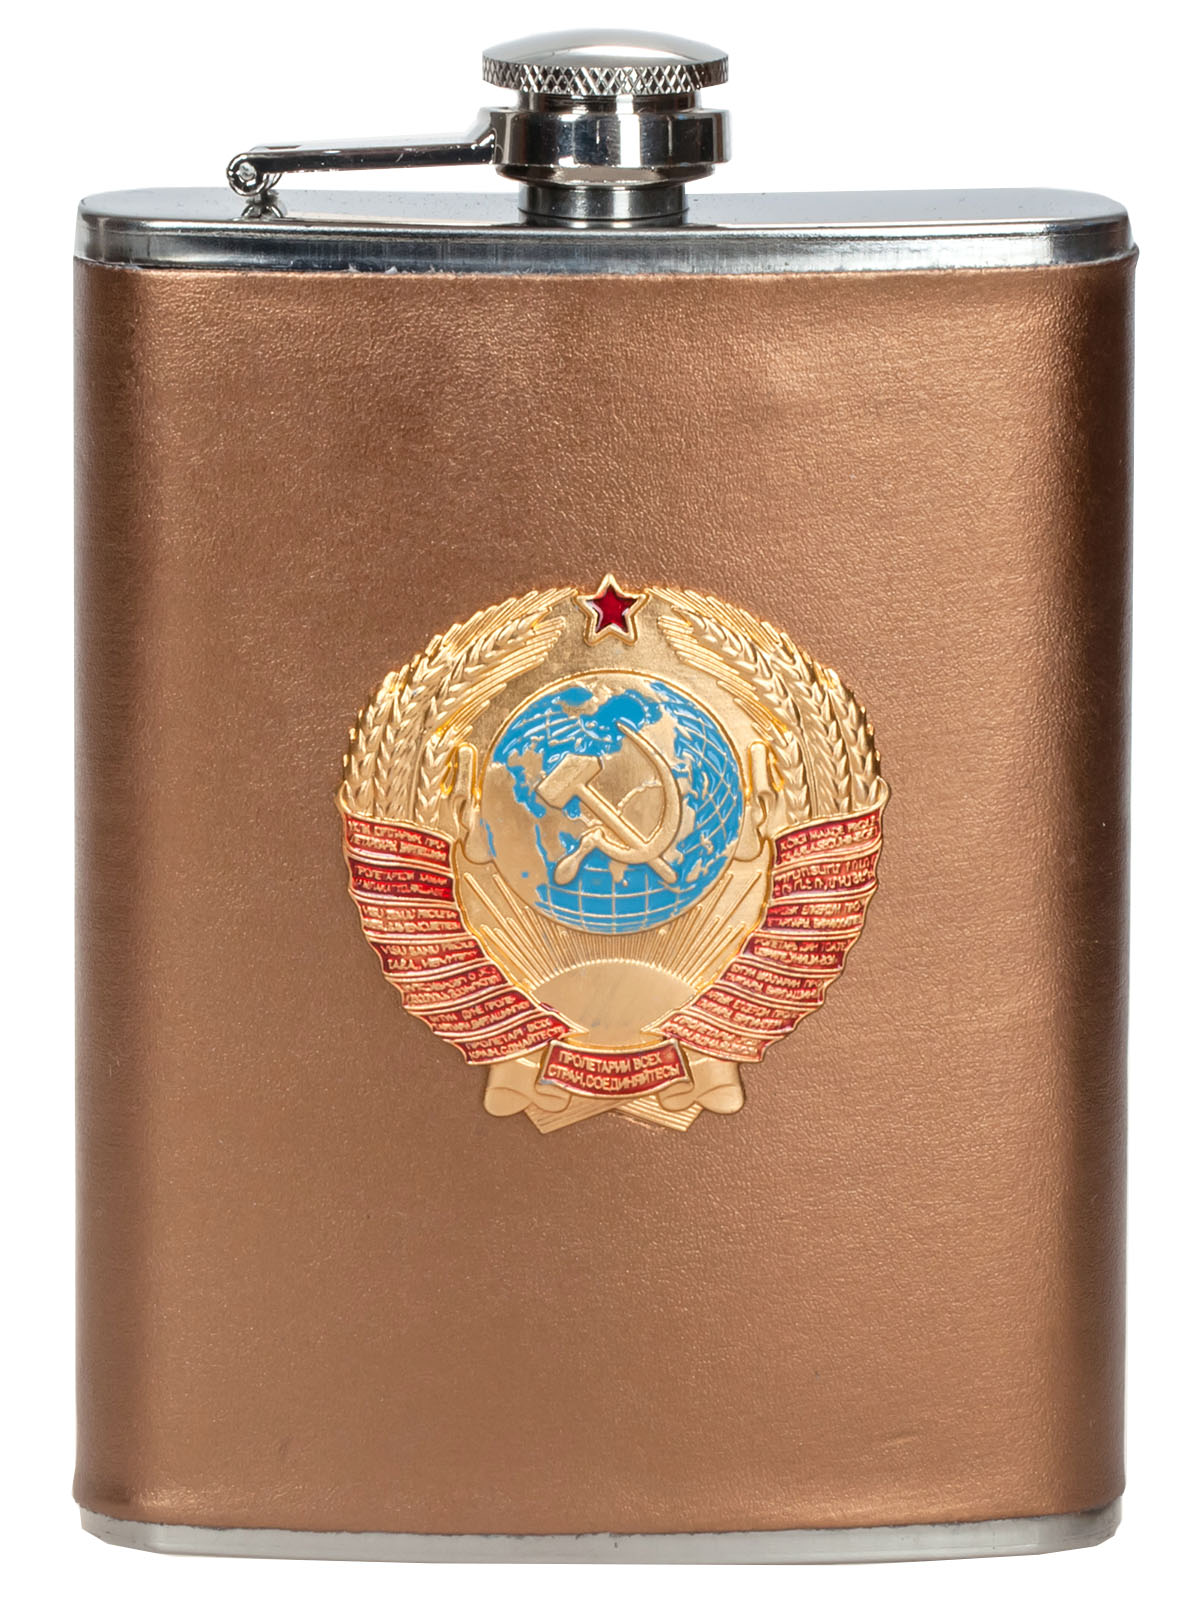 Советская фляжка из нержавеющей стали с гербом СССР